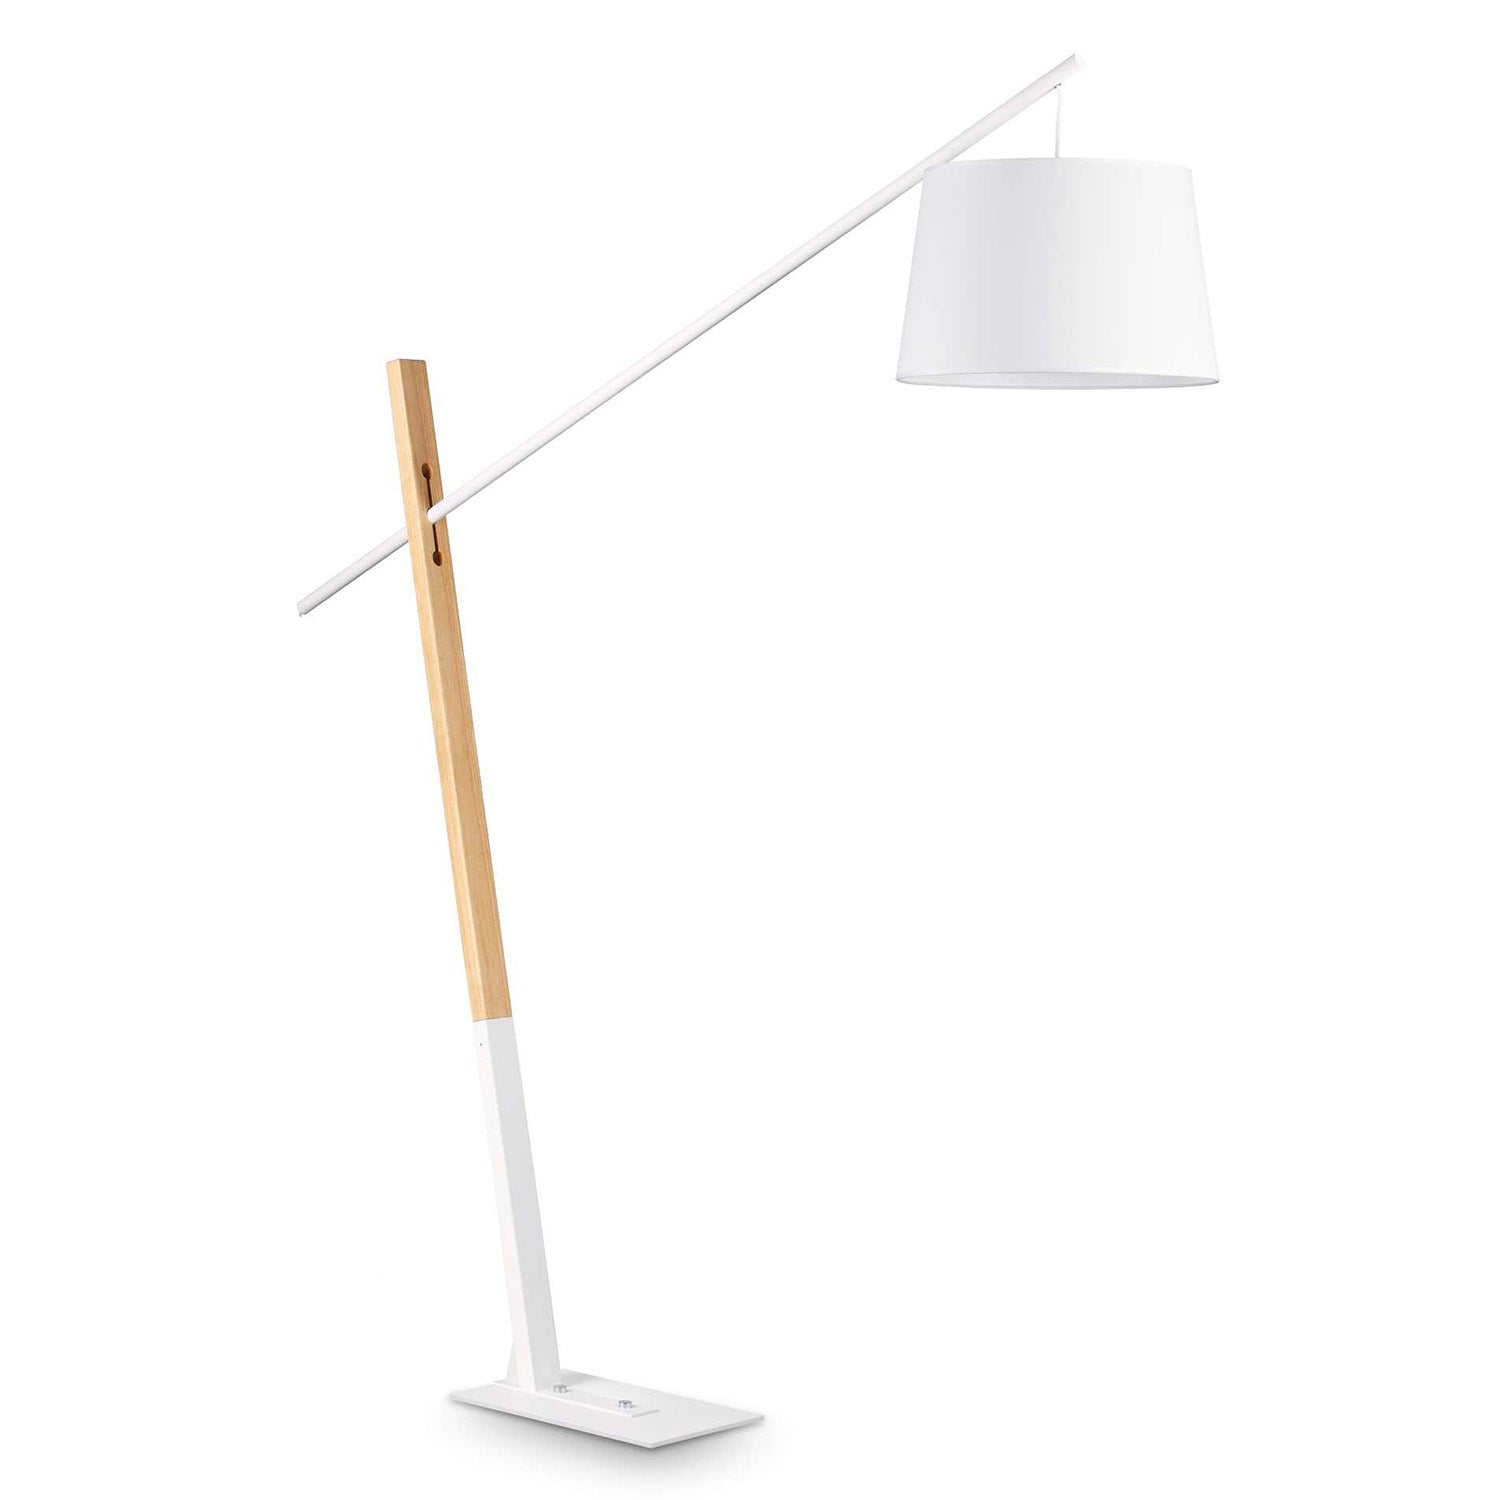 EMINENT - Modern tilting wooden floor lamp